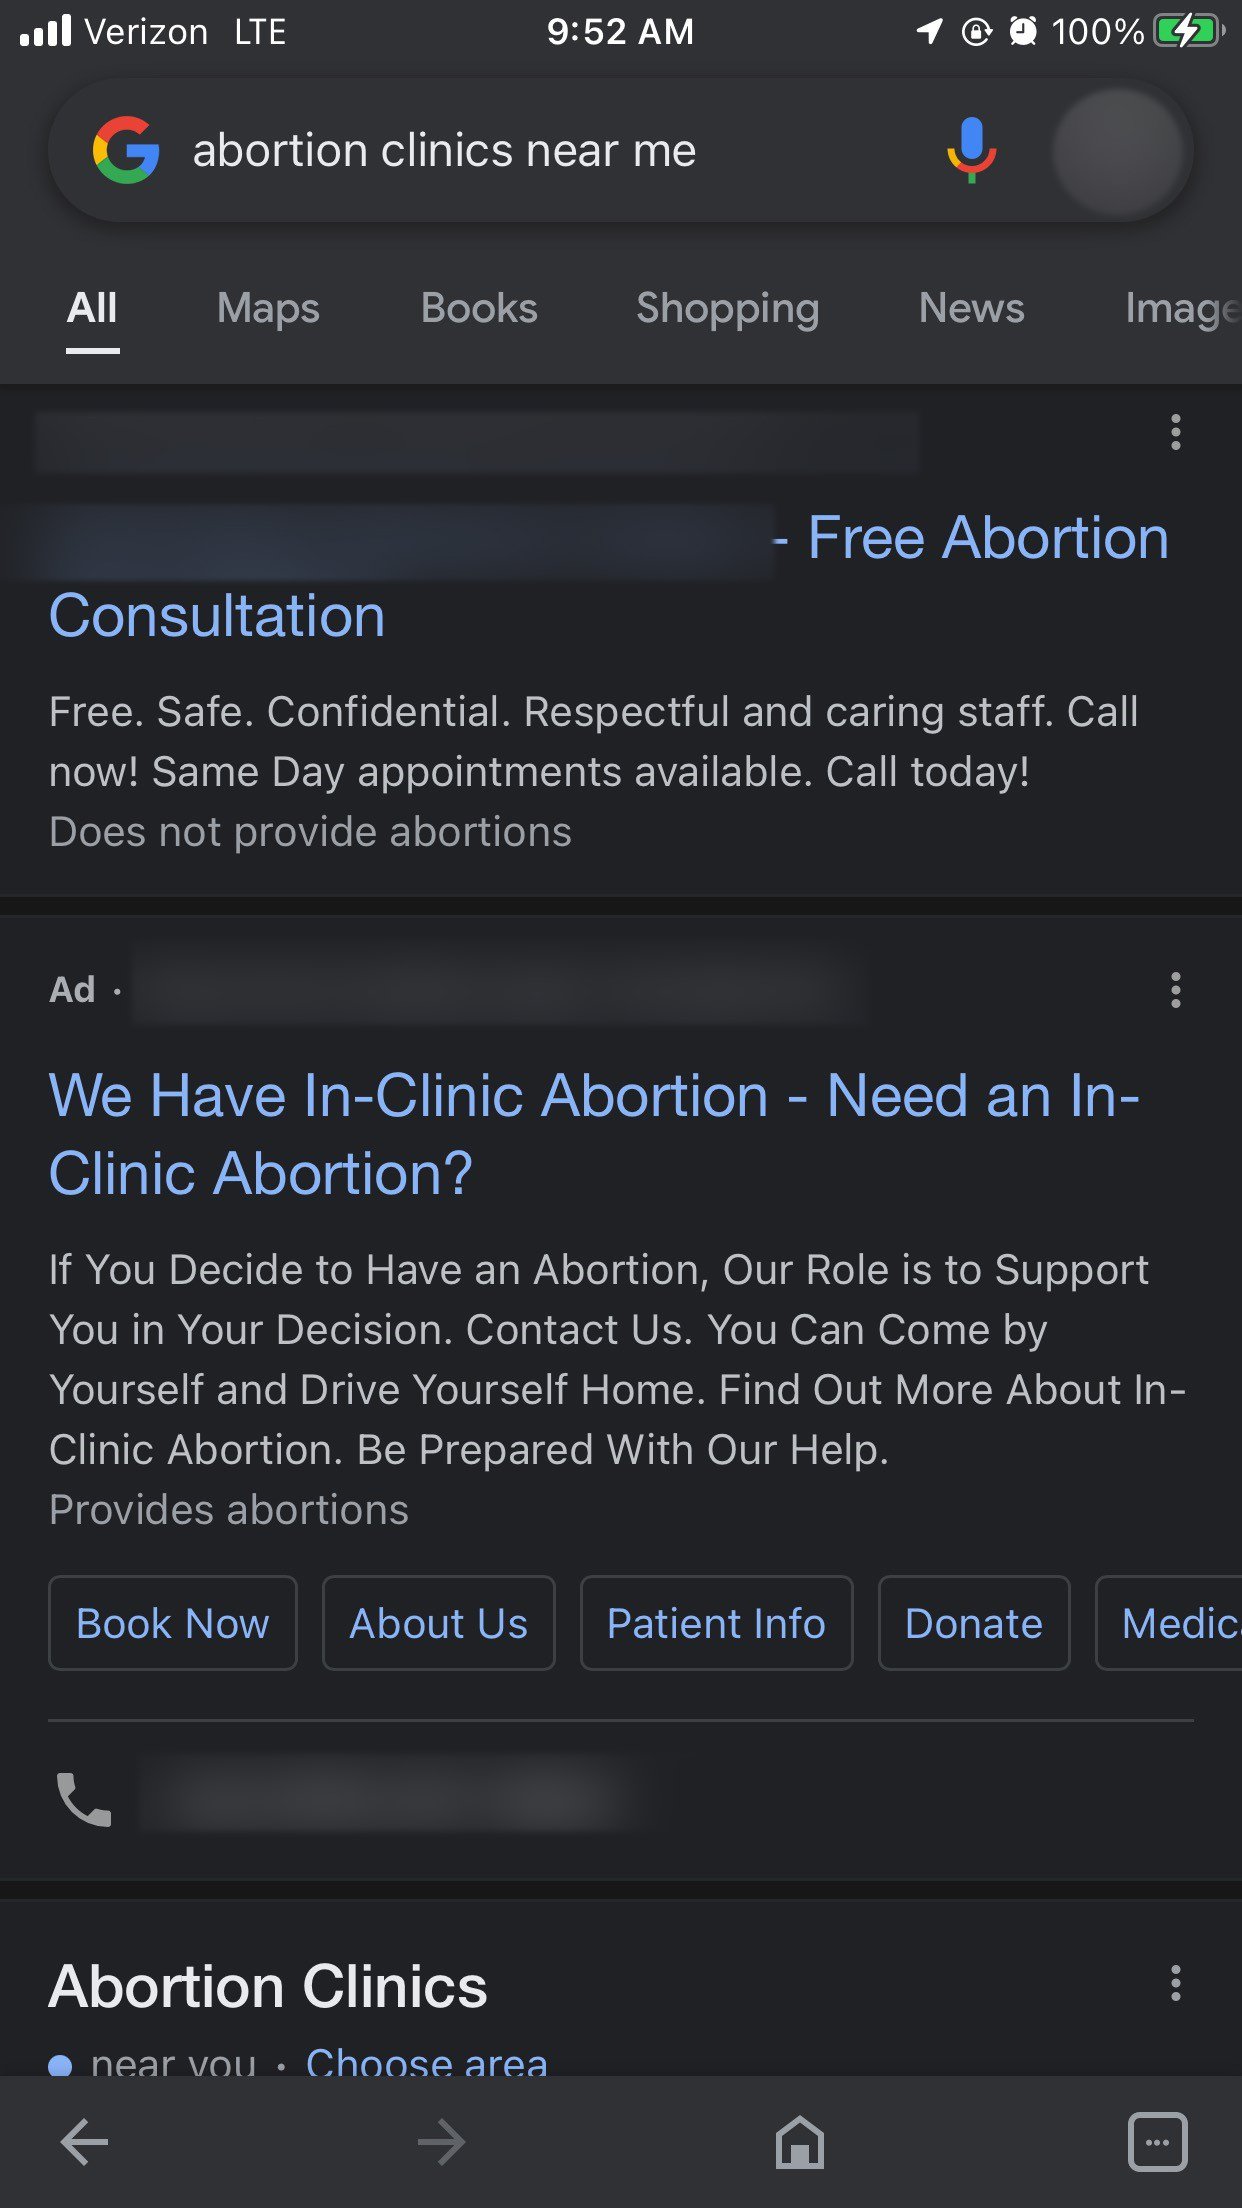 Resultados de búsqueda de Google para el término 'clínicas de aborto cerca de mí'. En letras pequeñas en la parte inferior, puede ver las palabras 'No brinda abortos' para una clínica.